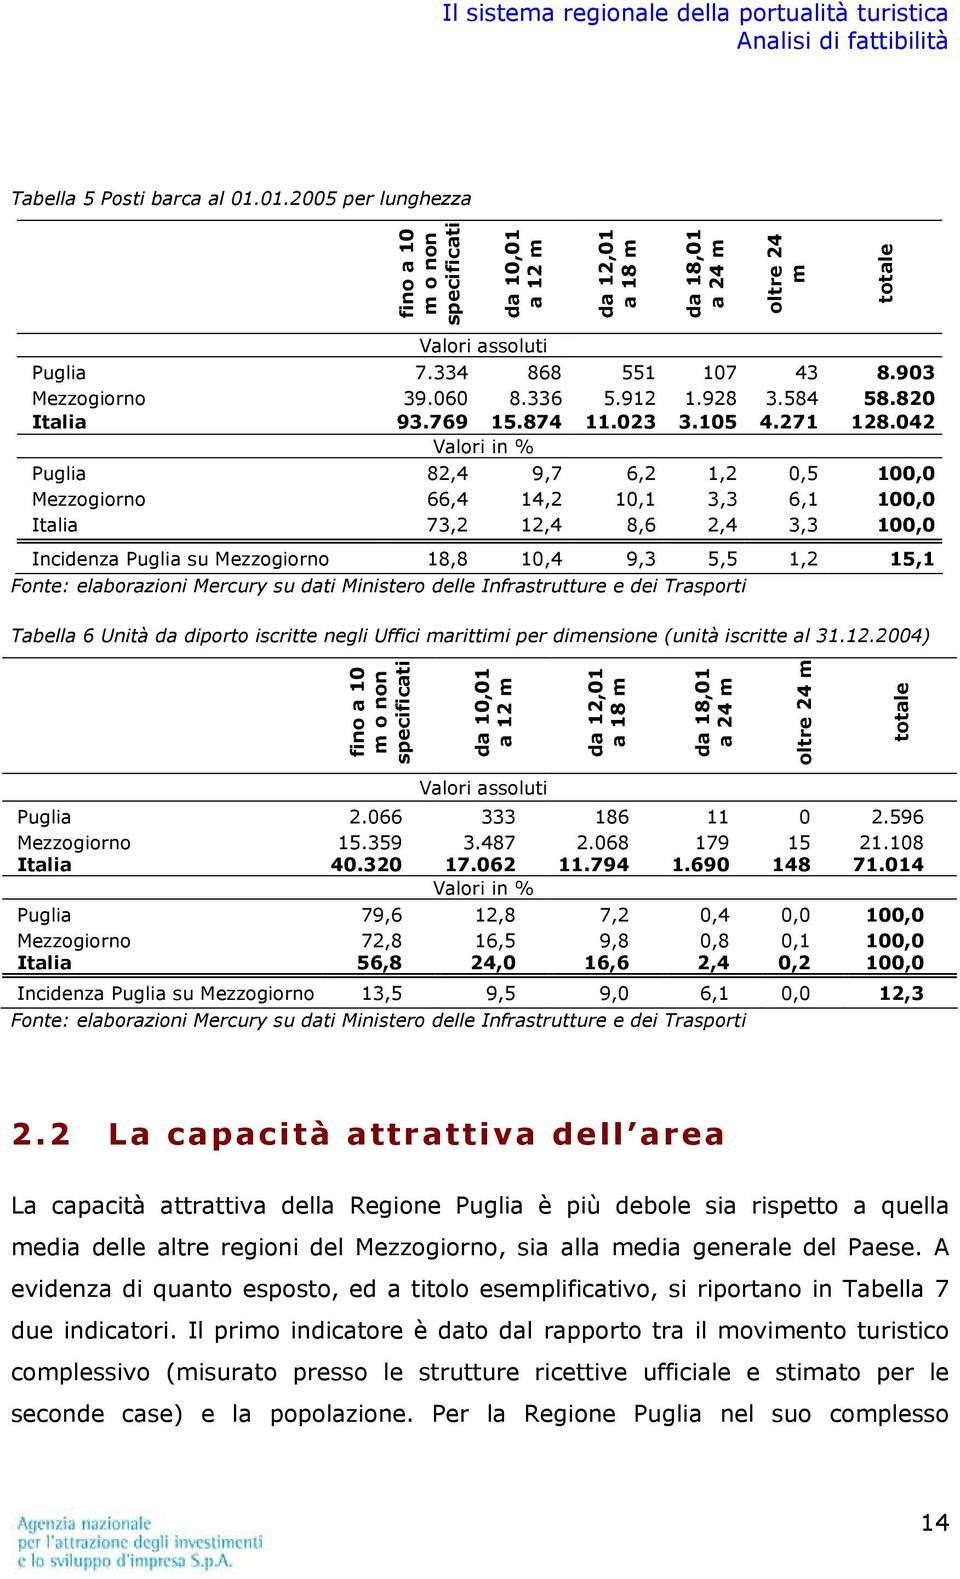 042 Valori in % Puglia 82,4 9,7 6,2 1,2 0,5 100,0 Mezzogiorno 66,4 14,2 10,1 3,3 6,1 100,0 Italia 73,2 12,4 8,6 2,4 3,3 100,0 Incidenza Puglia su Mezzogiorno 18,8 10,4 9,3 5,5 1,2 15,1 Fonte: